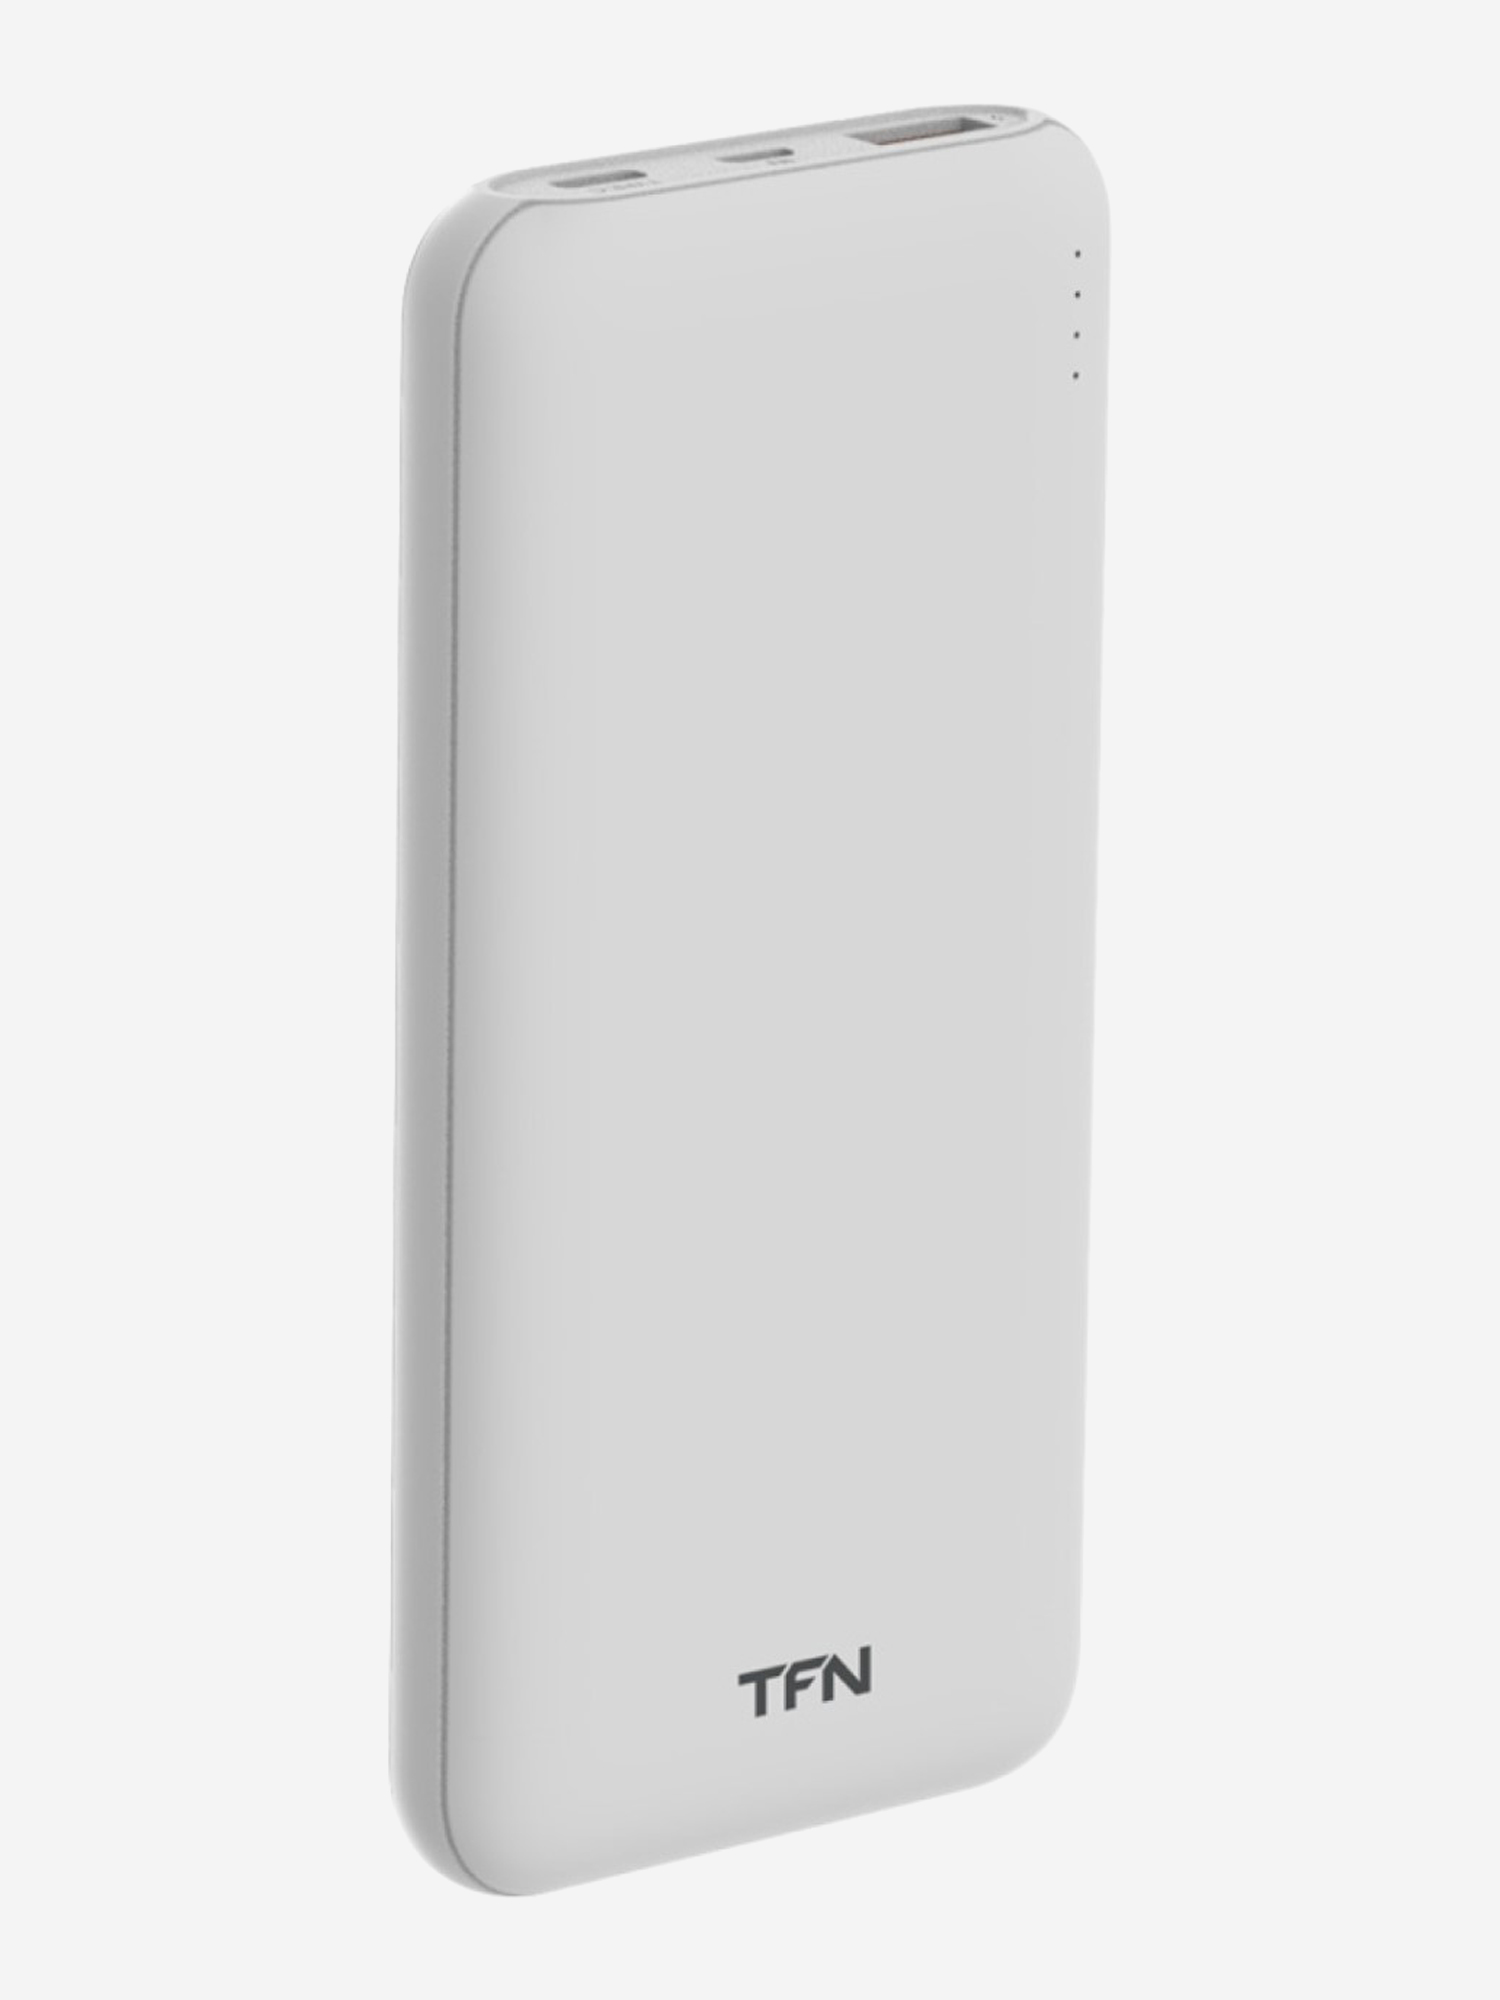 Внешний аккумулятор TFN 10000mAh Ultra Power PD white, Белый внешний аккумулятор olmio qm 11 10000mah space gray